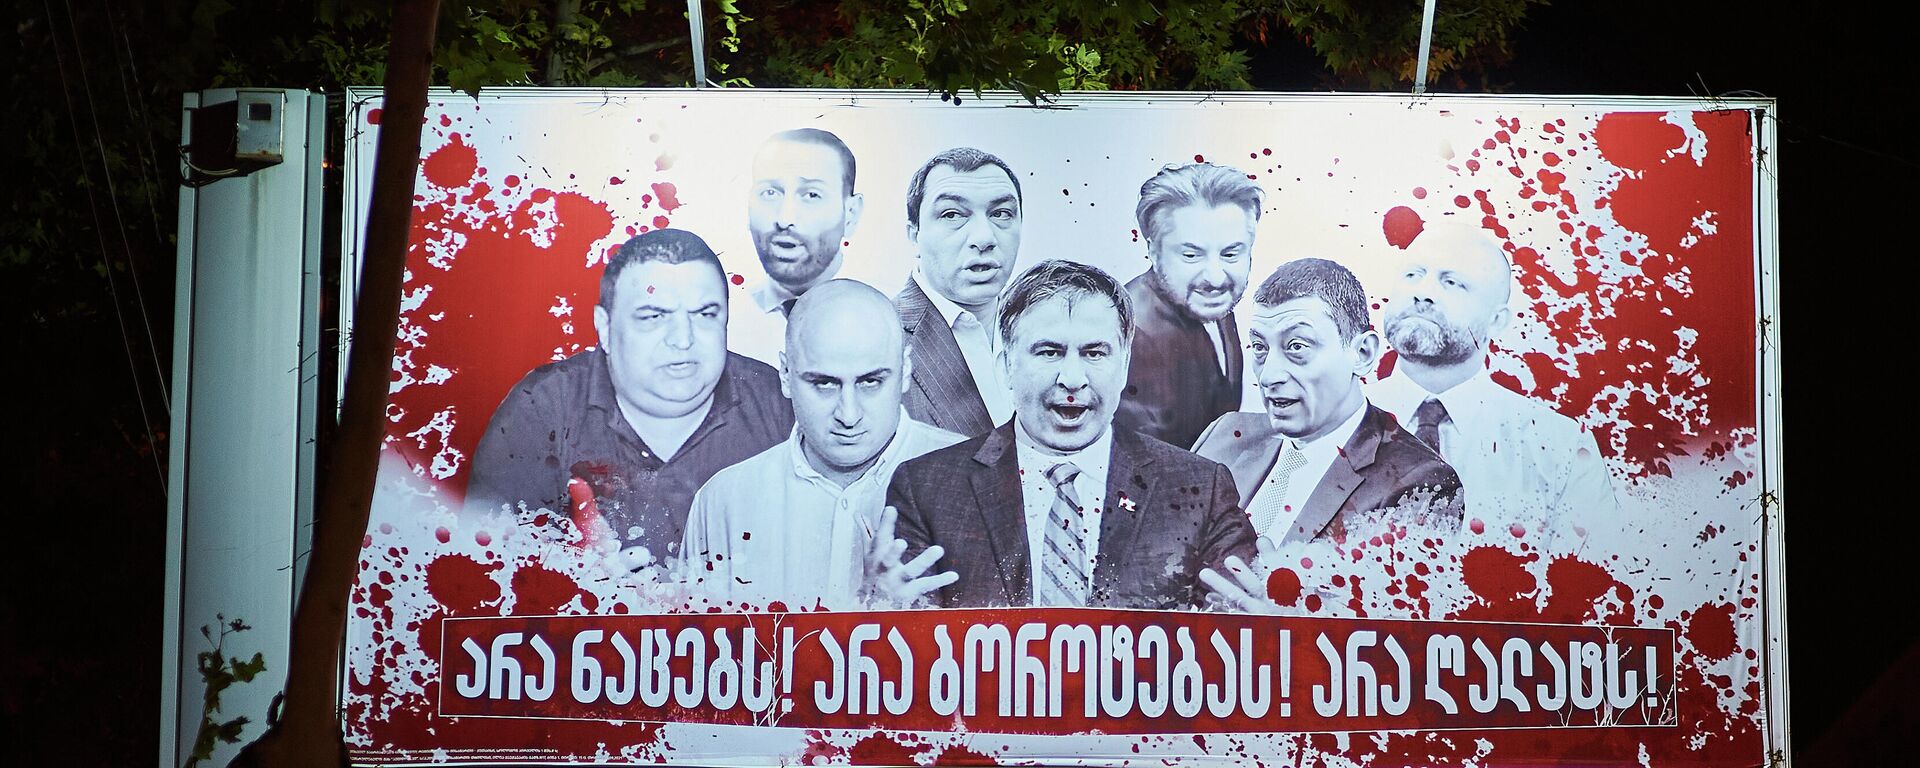 Кровавые баннеры на тбилисских улицах - предвыборная реклама - Sputnik Грузия, 1920, 30.09.2021